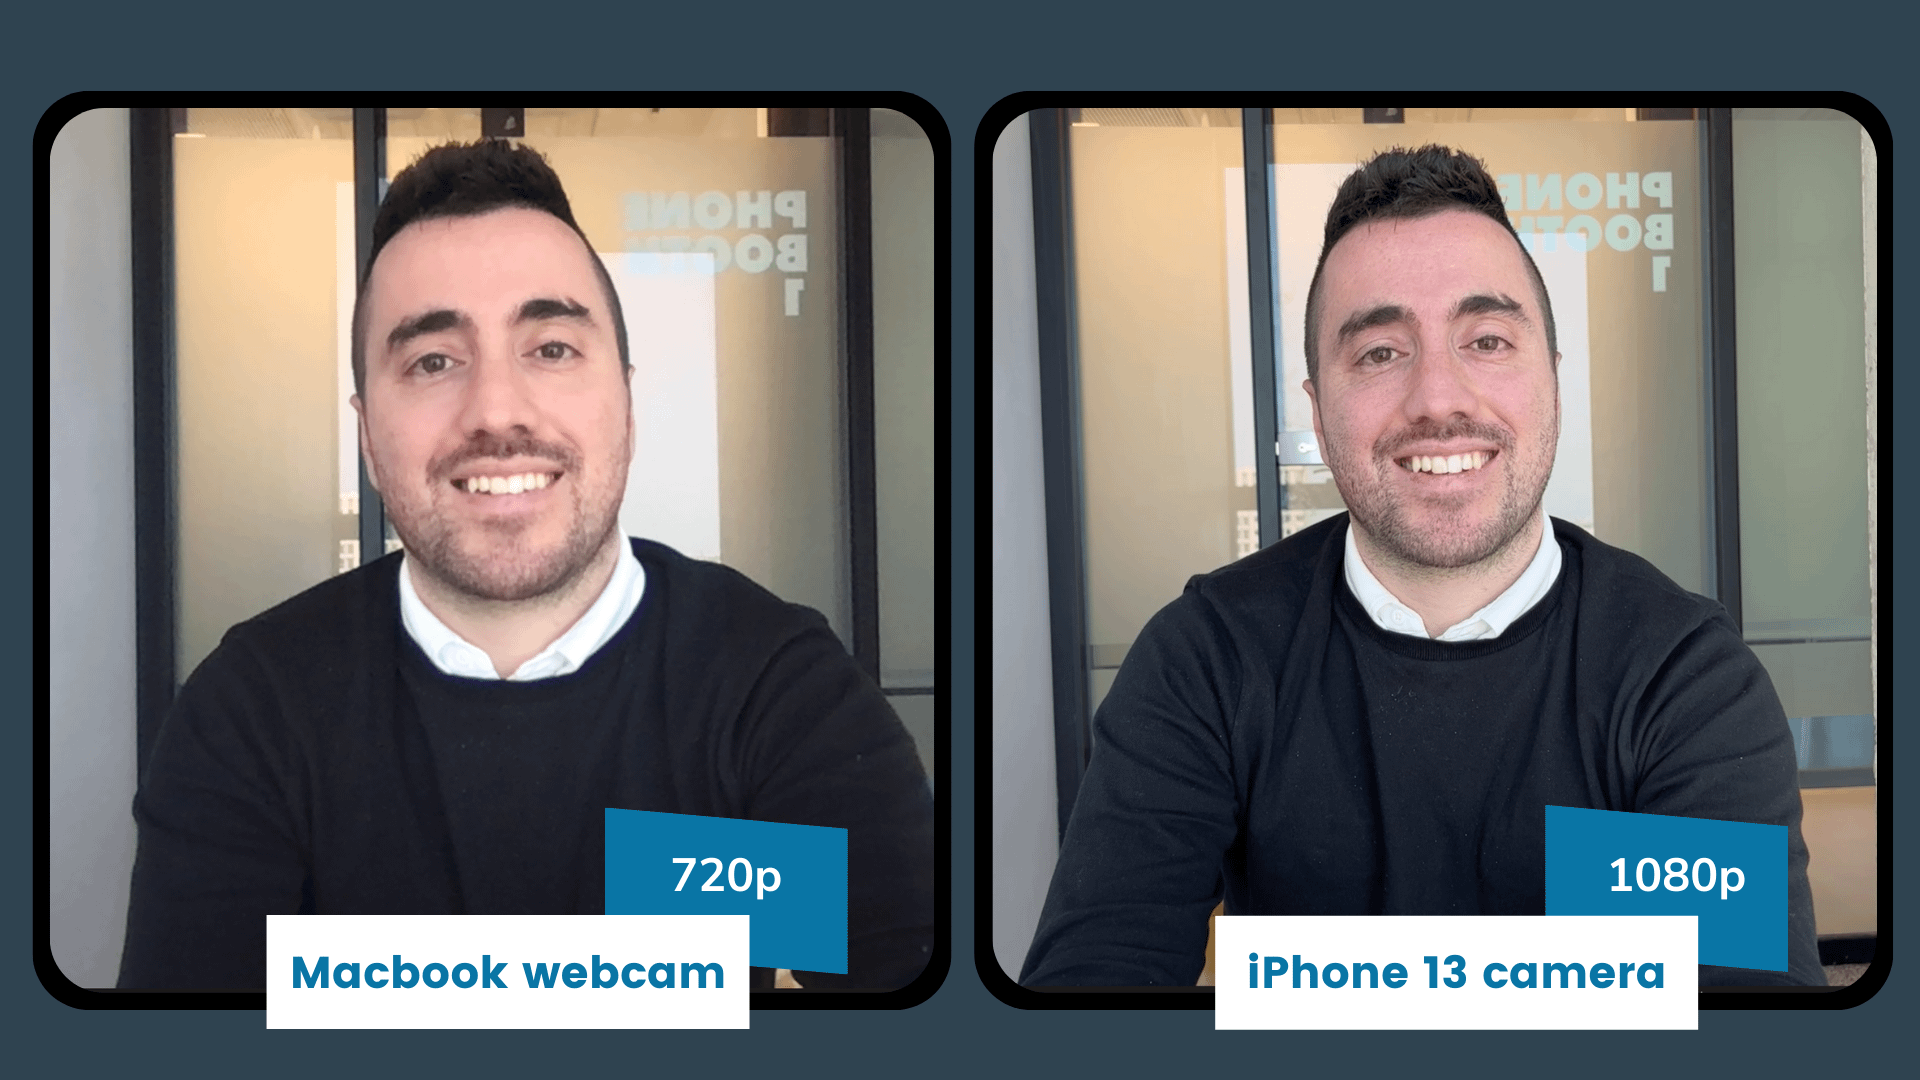 Macbook camera vs iPhone camera - online presenteren met kwaliteit